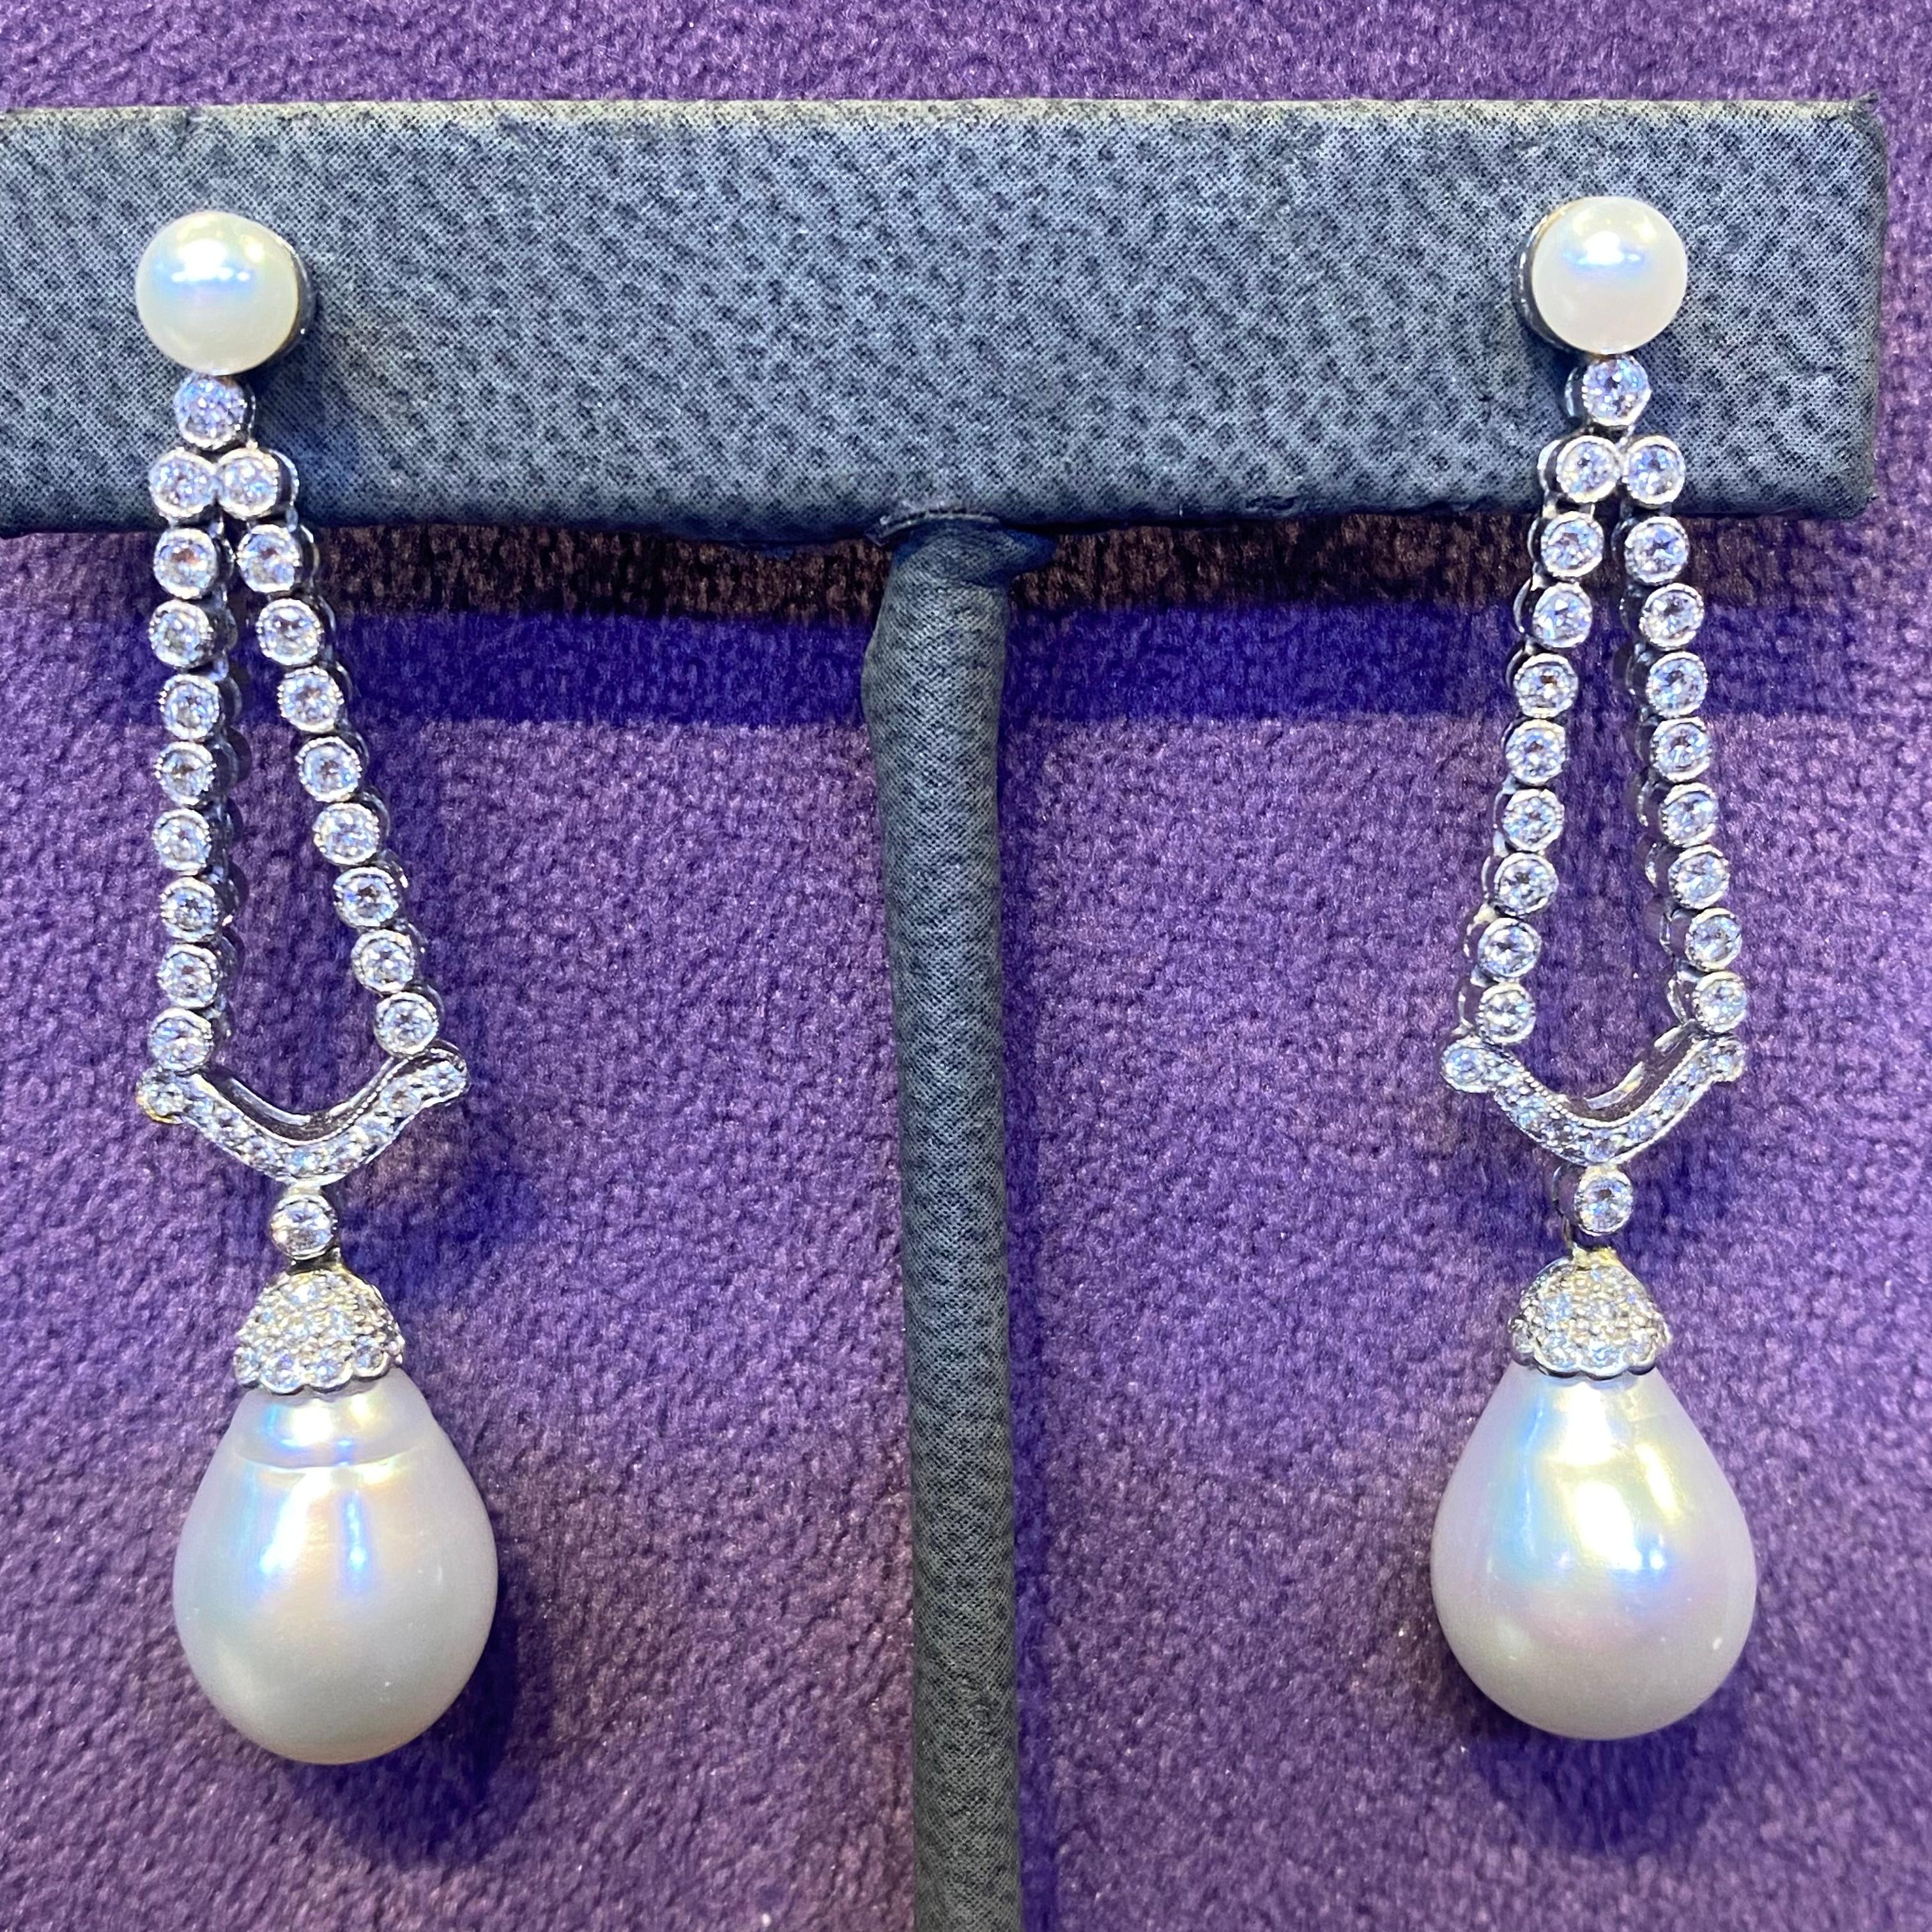 Perlen- & Diamant-Ohrringe

Ohrringe mit zwei Zuchtperlen, die mit zwei Reihen kaskadenförmig geschliffener Diamanten besetzt sind, darunter zwei größere Südseeperlen, die elegant baumeln.

Maße der großen Perle: 13.9x 11.66mm

Gewicht des